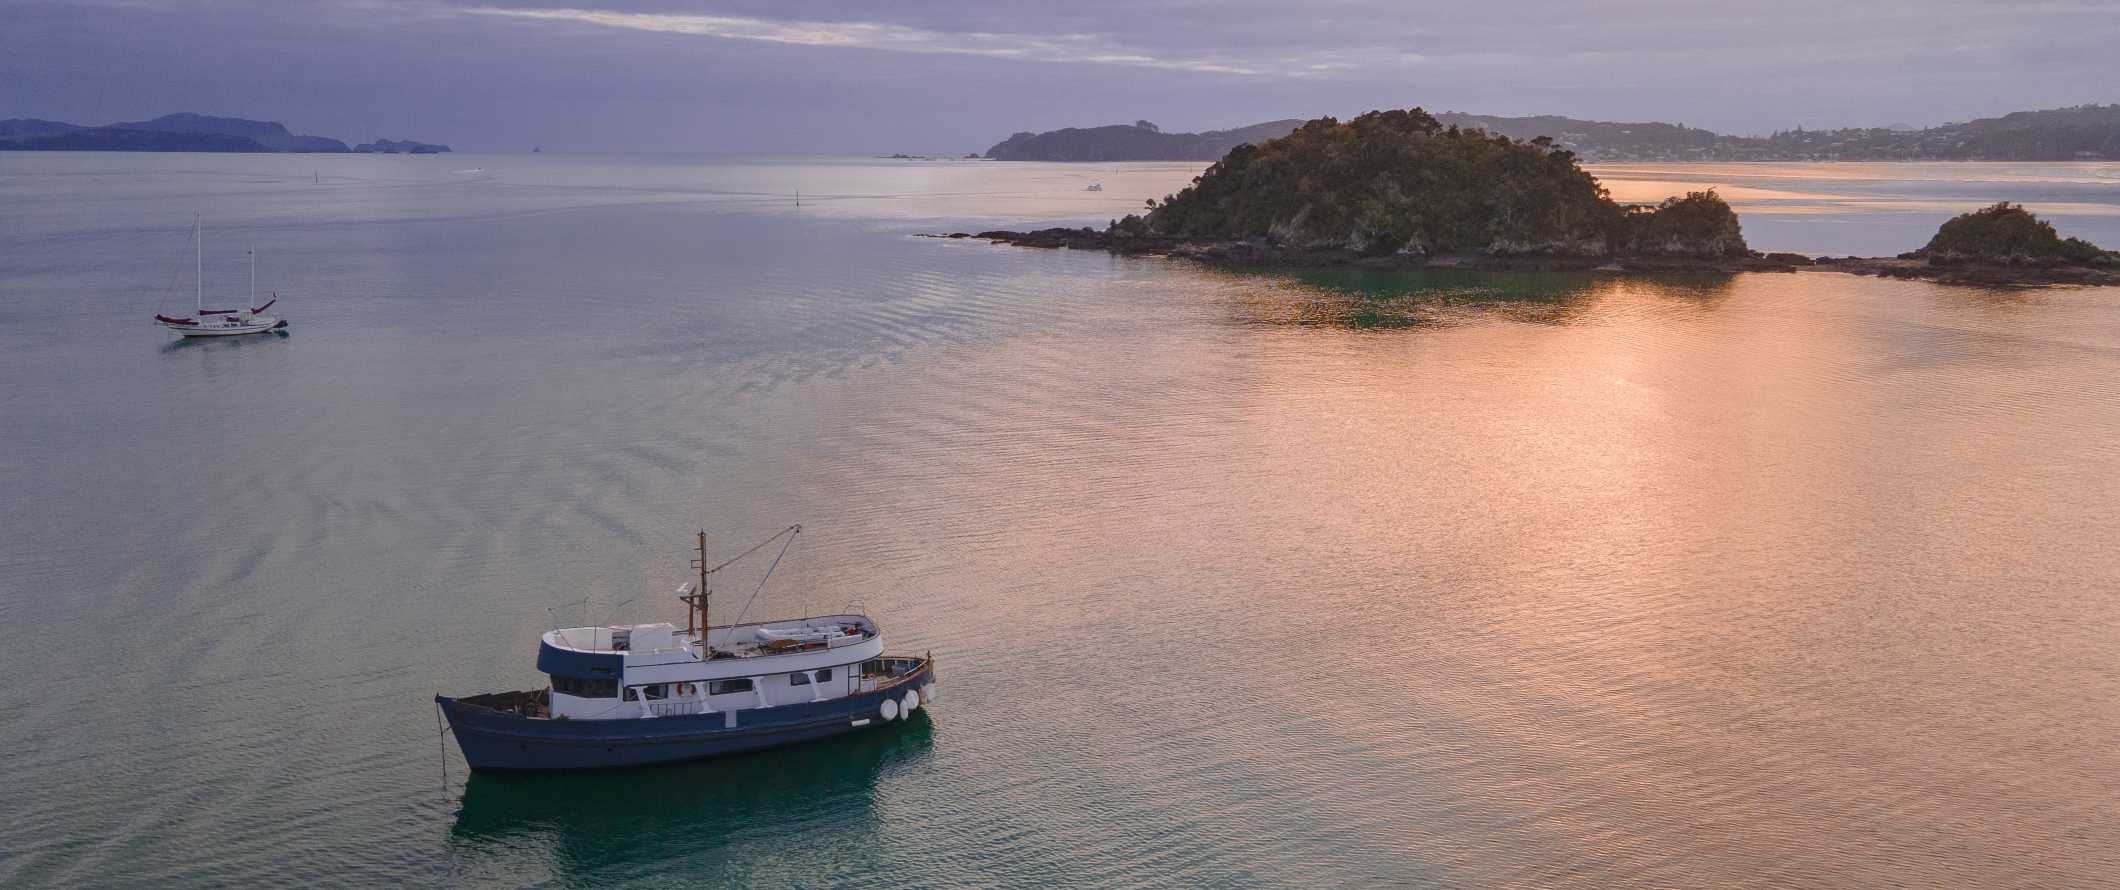 Os barcos picam entre ilhas no Golfo de Ilhas, Nova Zelândia